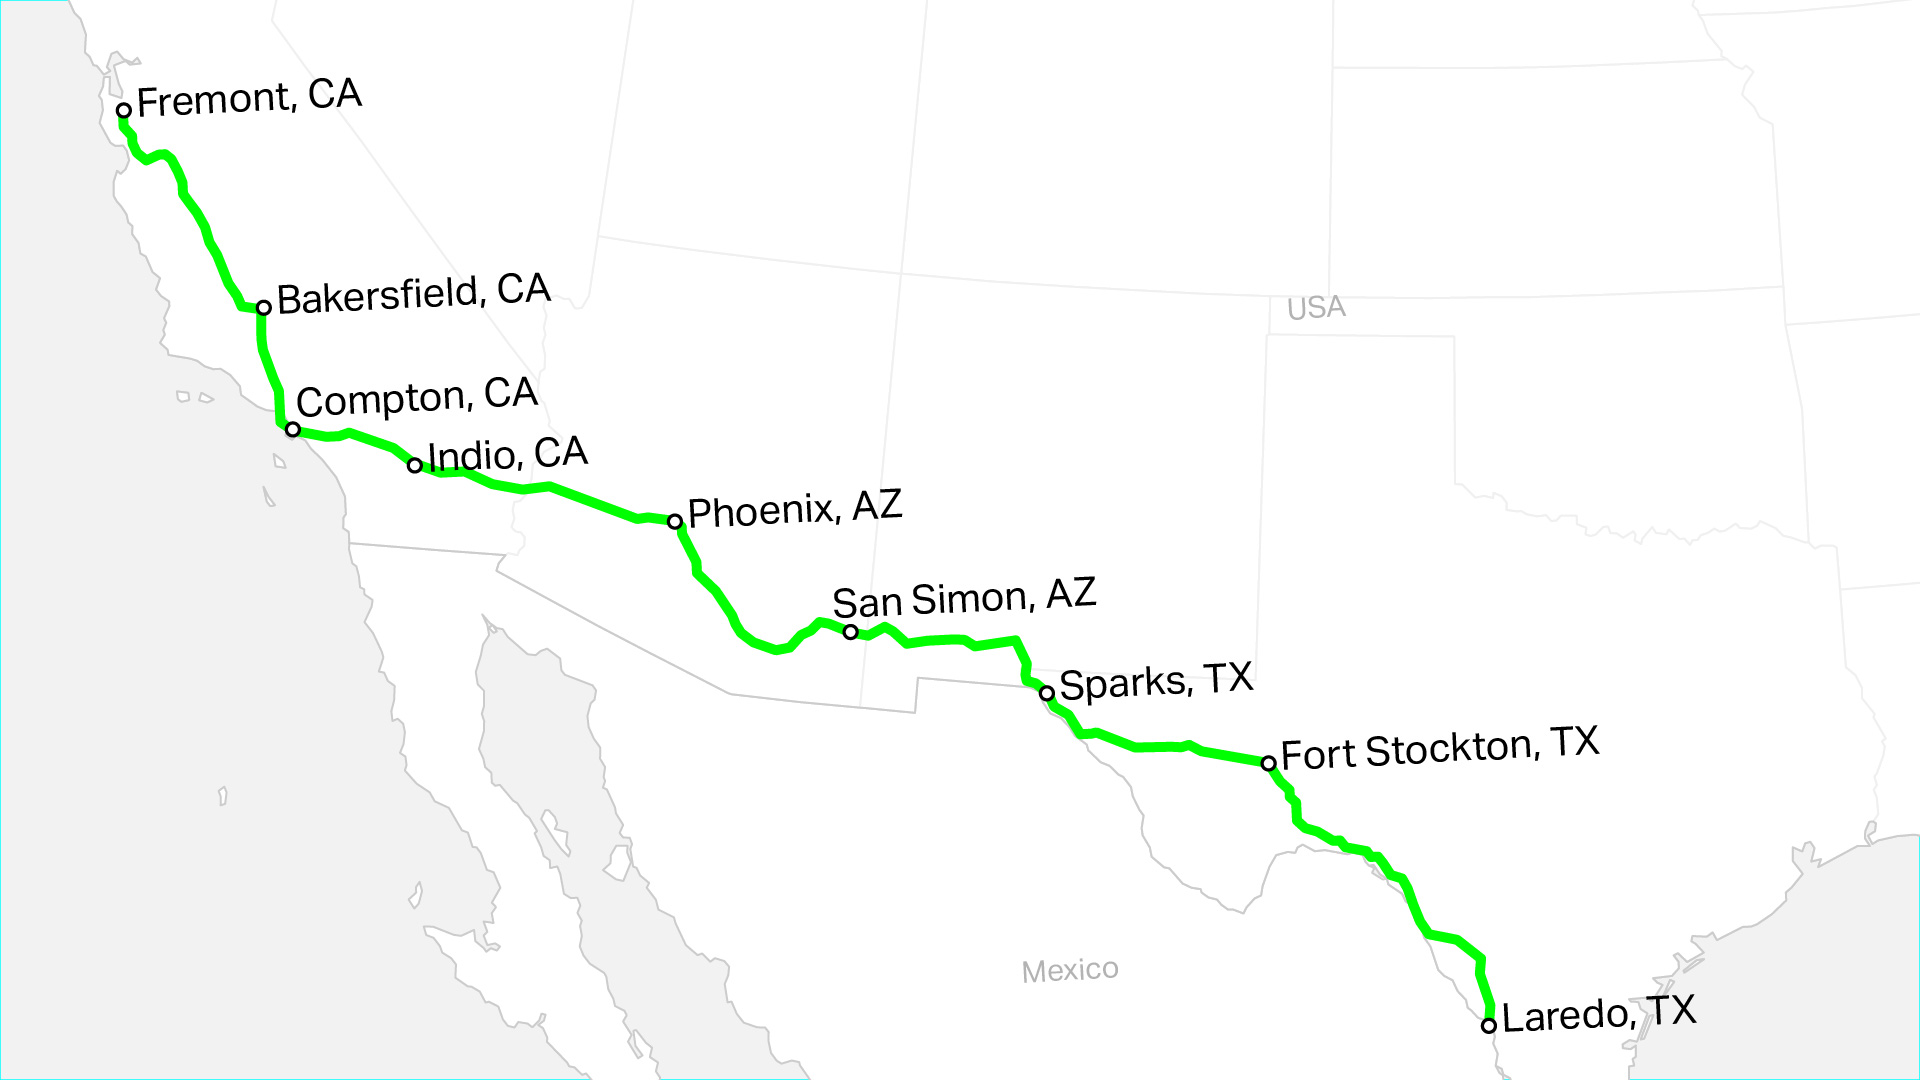 Mapa del corredor de carga propuesto desde Fremont, CA hasta Laredo, TX